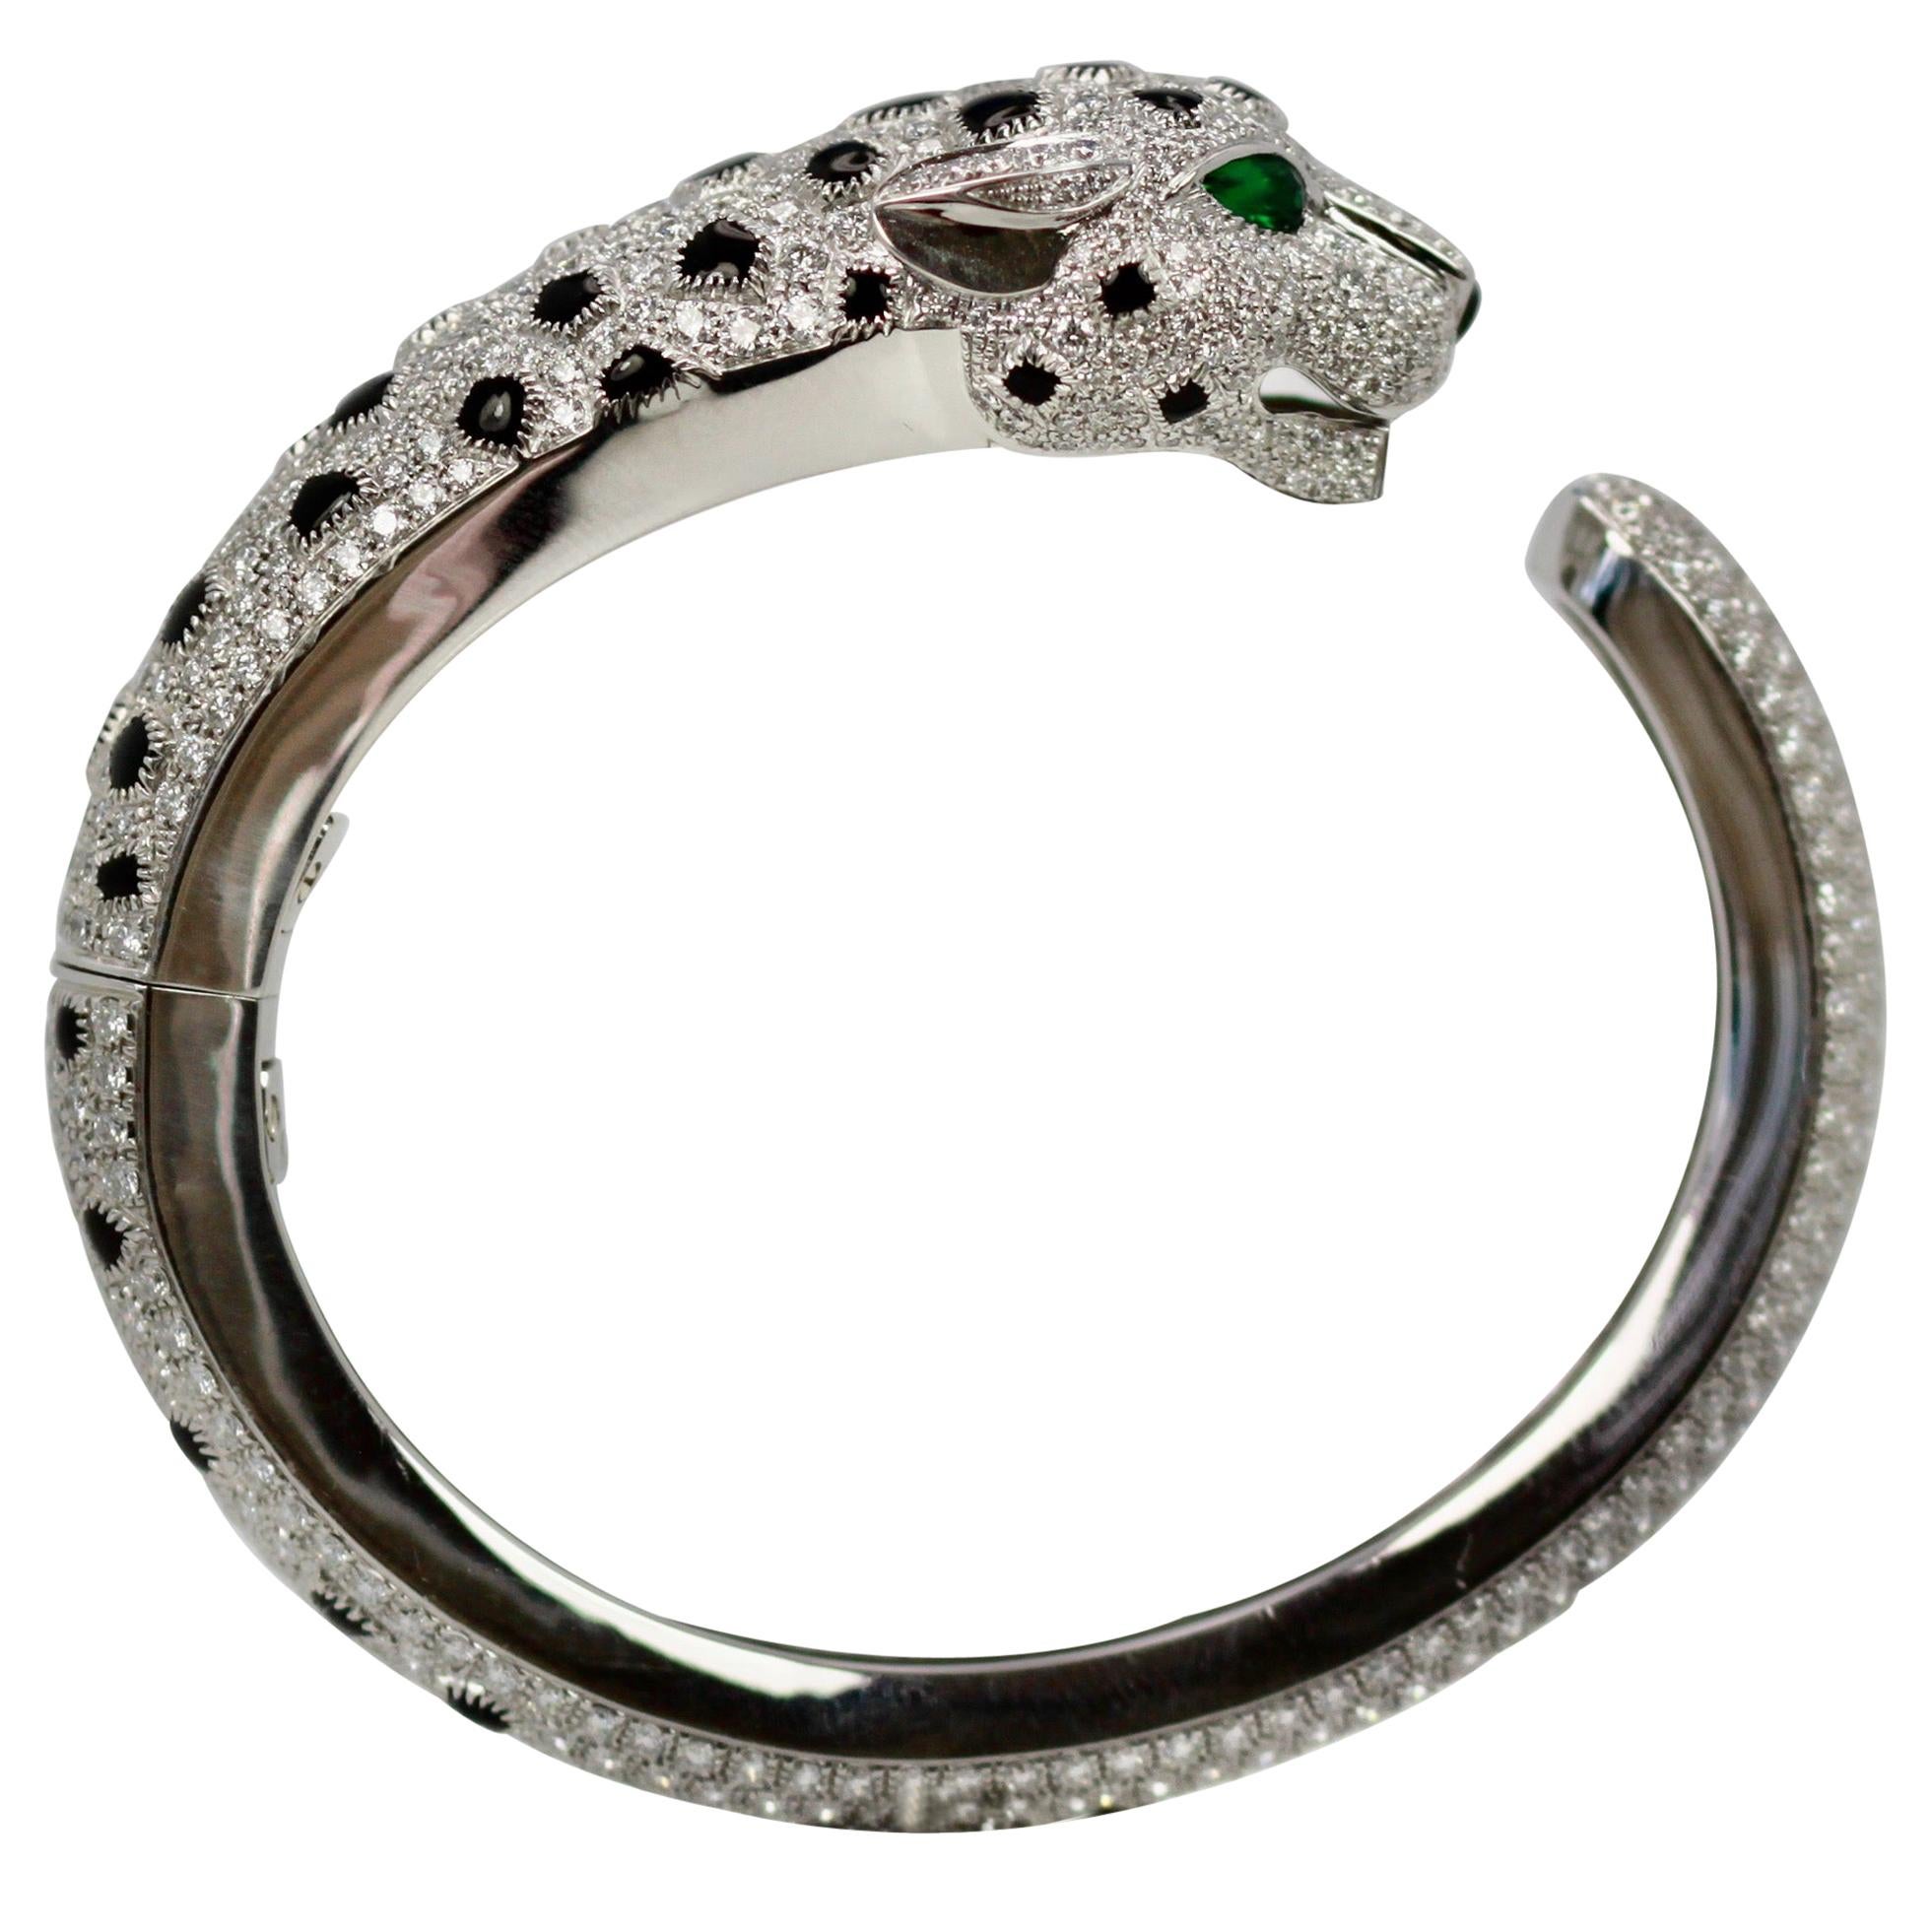 CRH6007517 - Panthère de Cartier bracelet - Platinum, emeralds, onyx,  diamonds - Cartier | Mens gold bracelets, Cartier jewelry, Bracelet designs